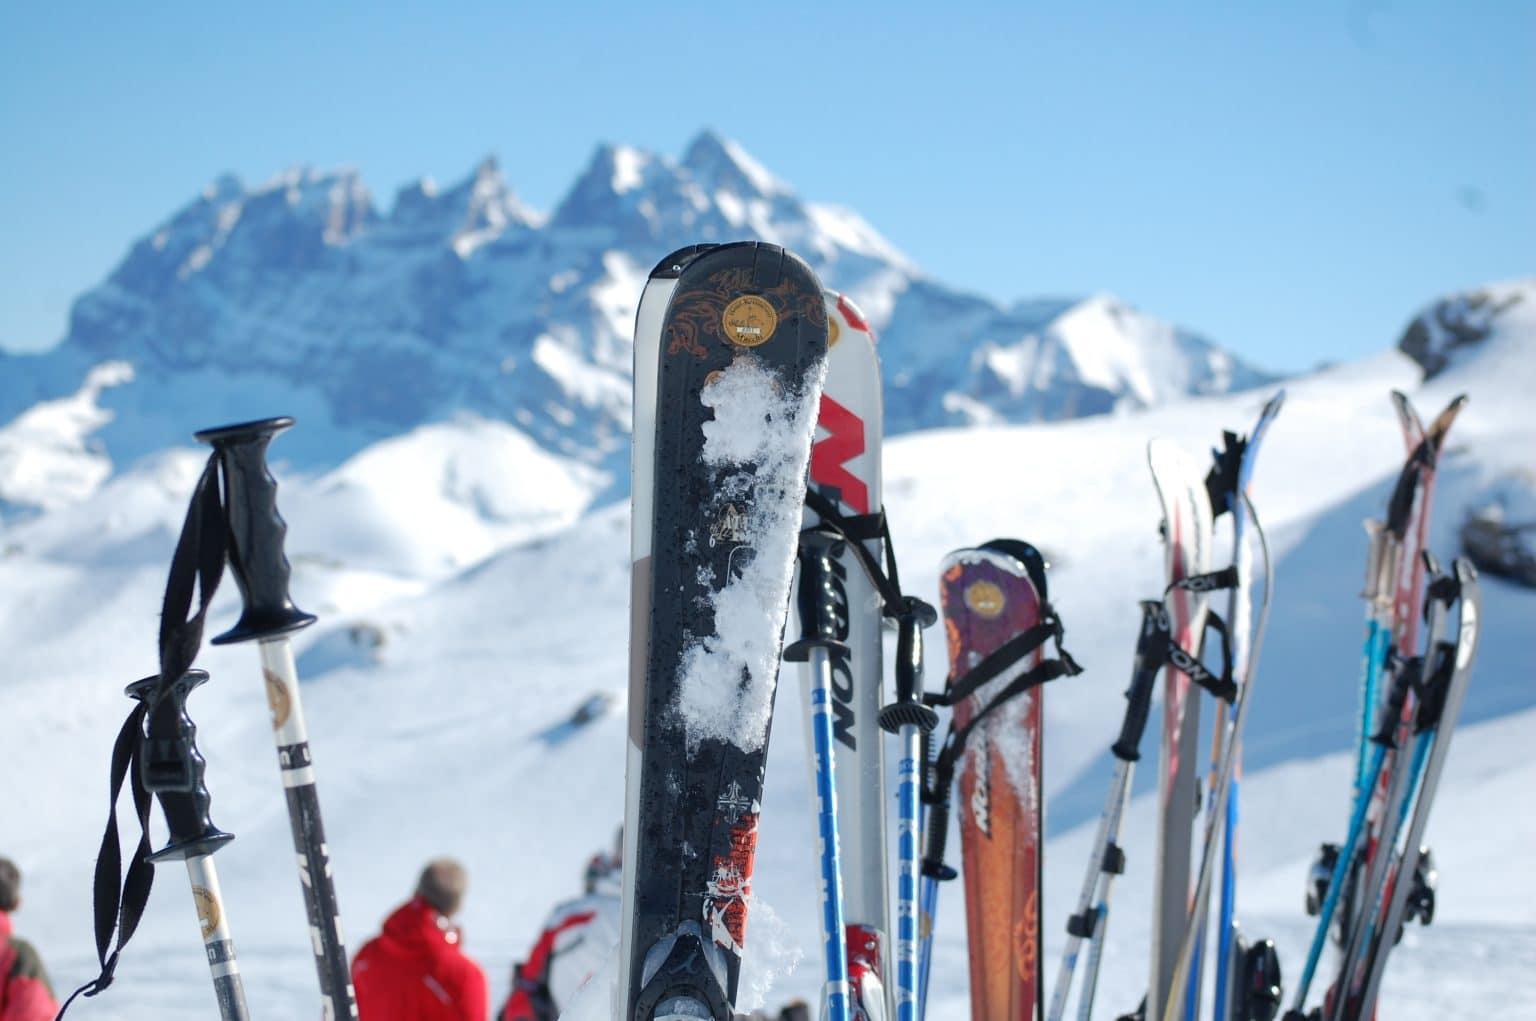 Location de matériel de ski - Alikats